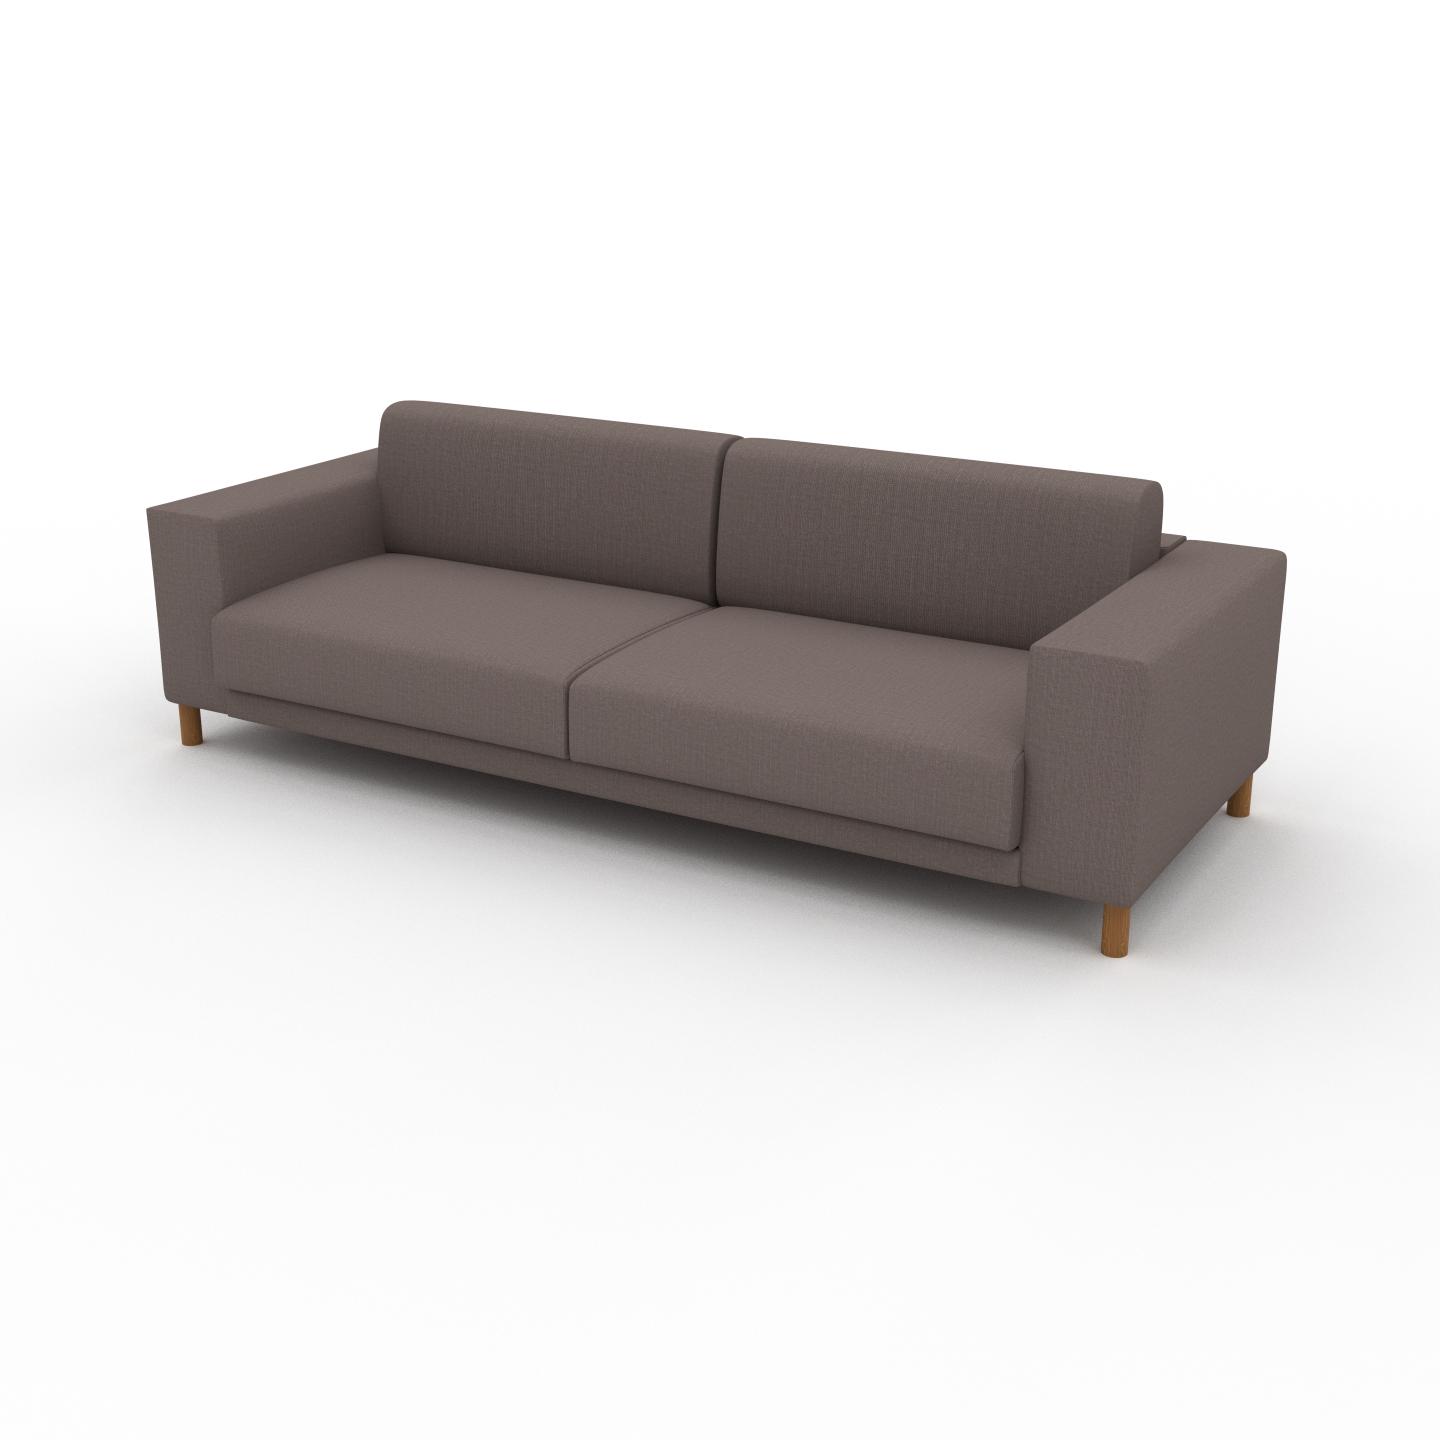 MYCS Sofa Taupegrau - Moderne Designer-Couch: Hochwertige Qualität, einzigartiges Design - 248 x 75 x 98 cm, Komplett anpassbar